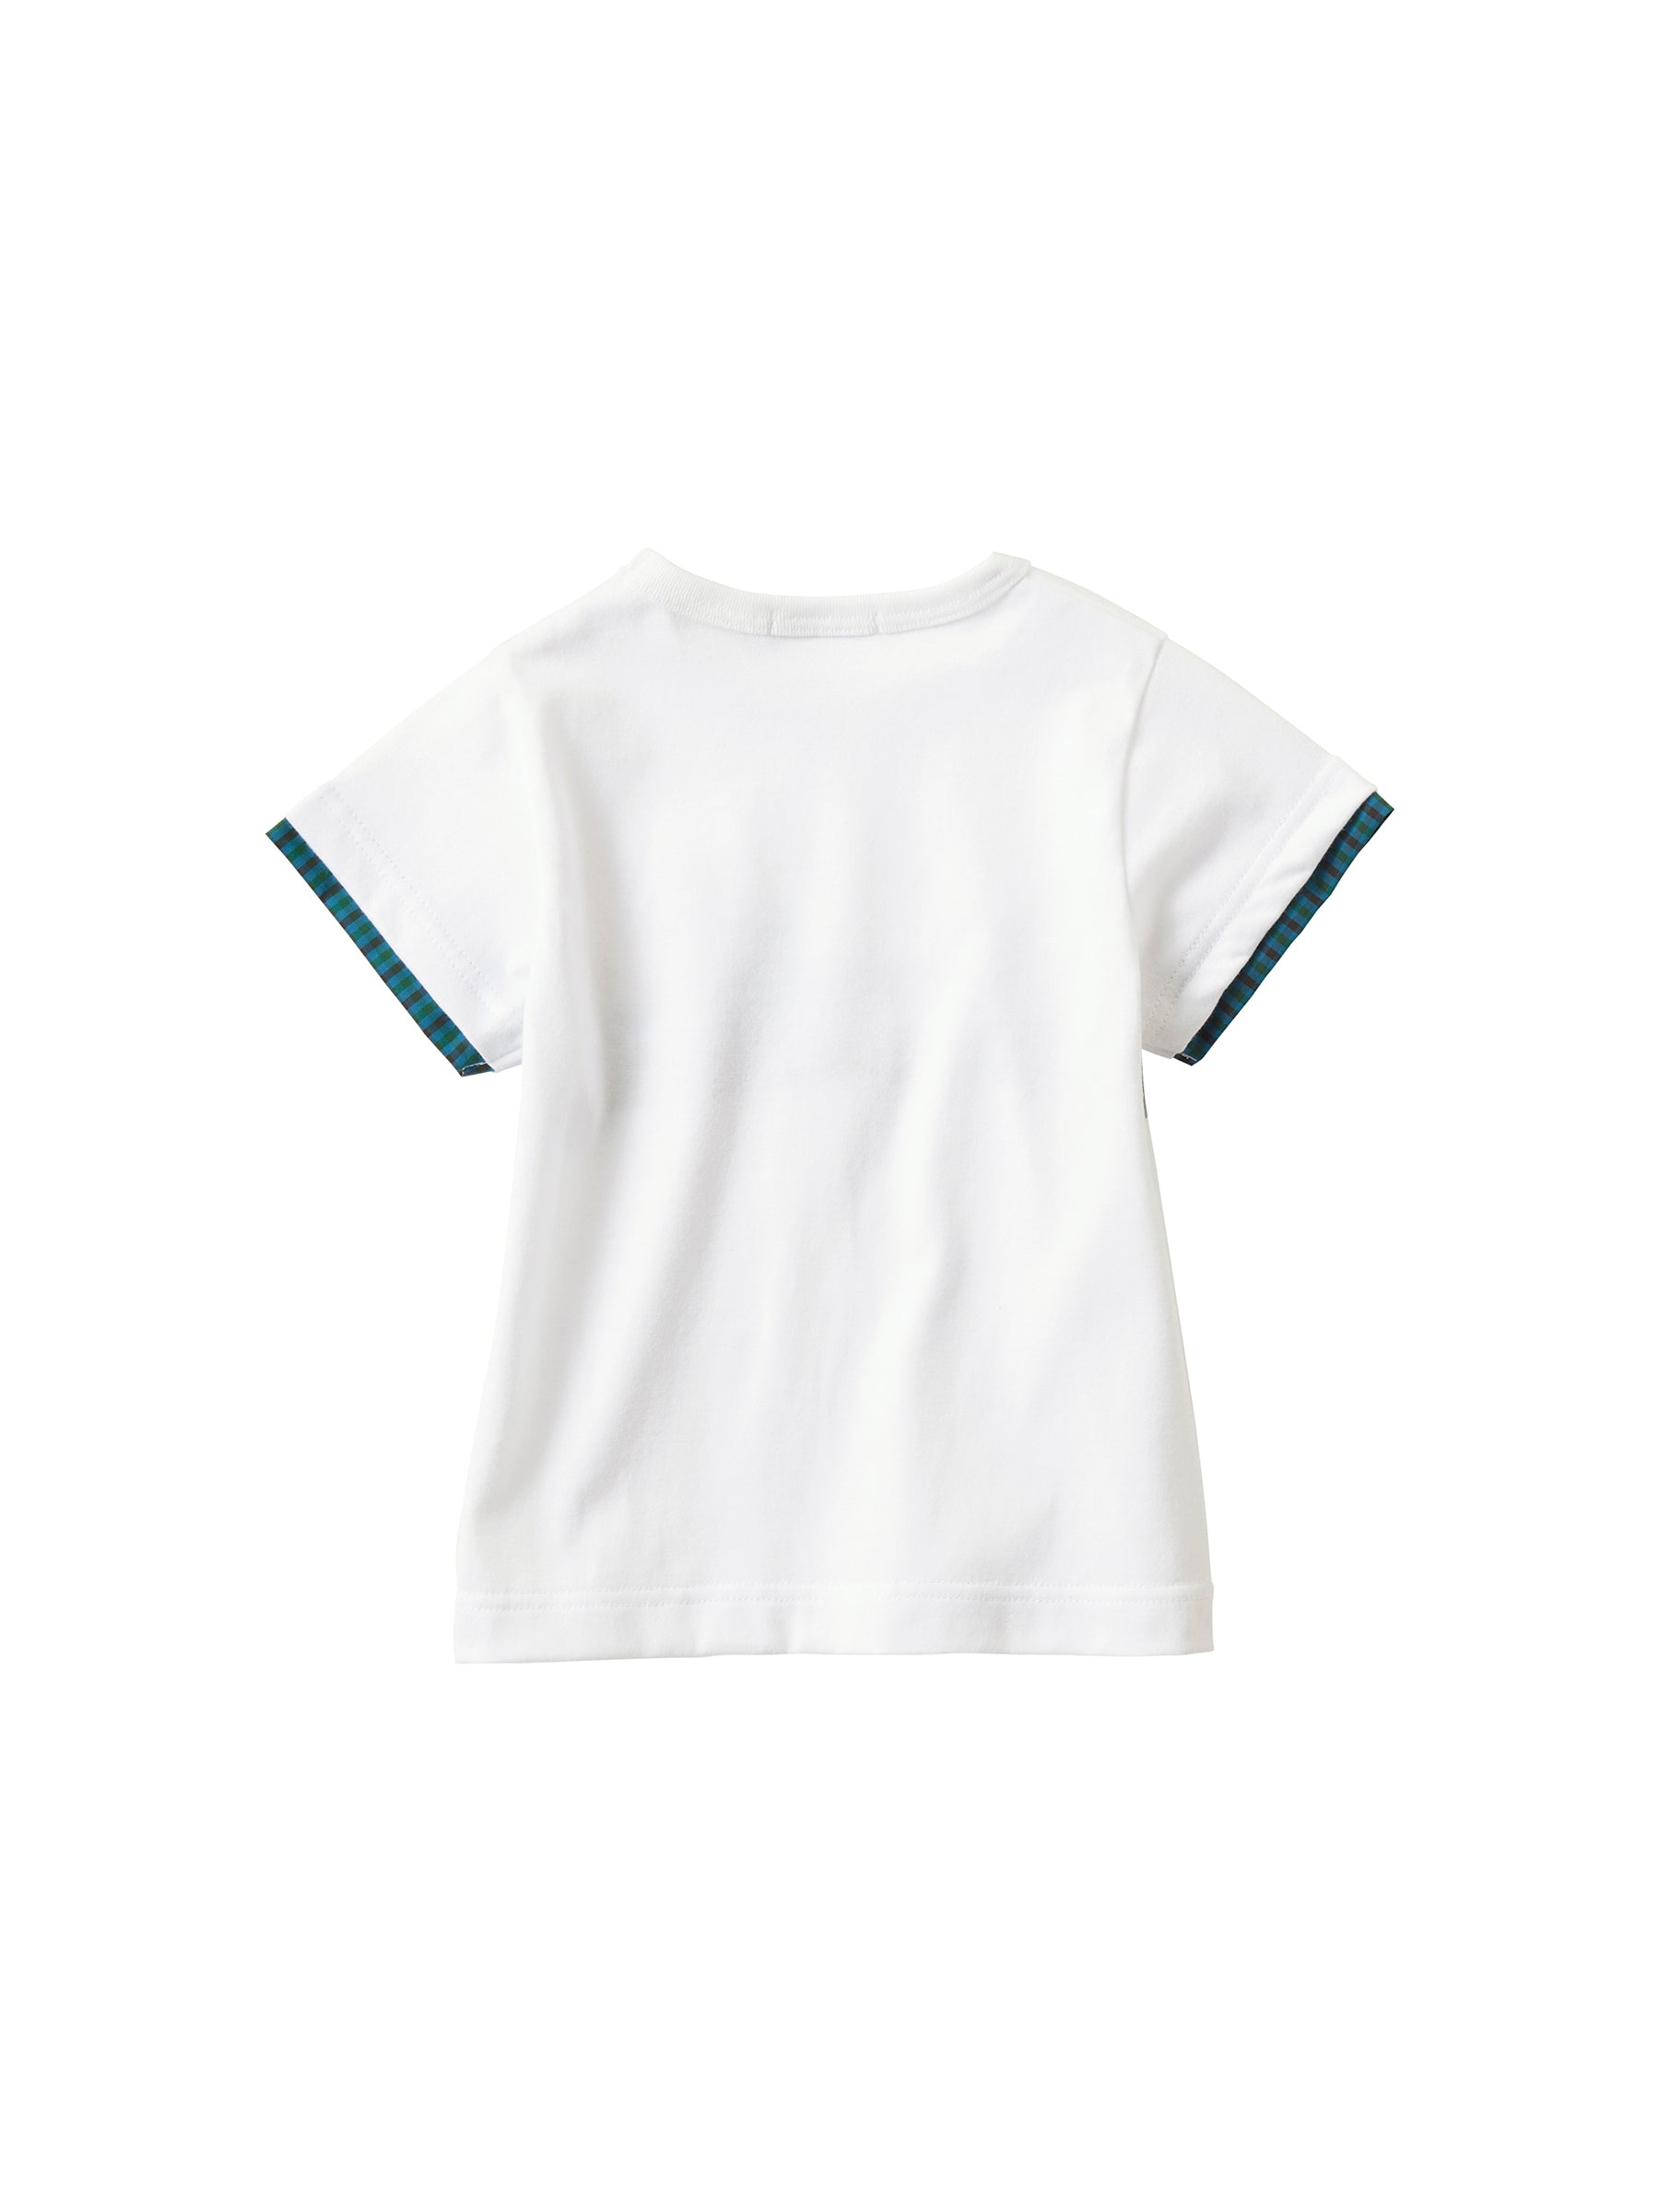 ファミリア 110 半袖 チェック シャツ カッター - Tシャツ/カットソー